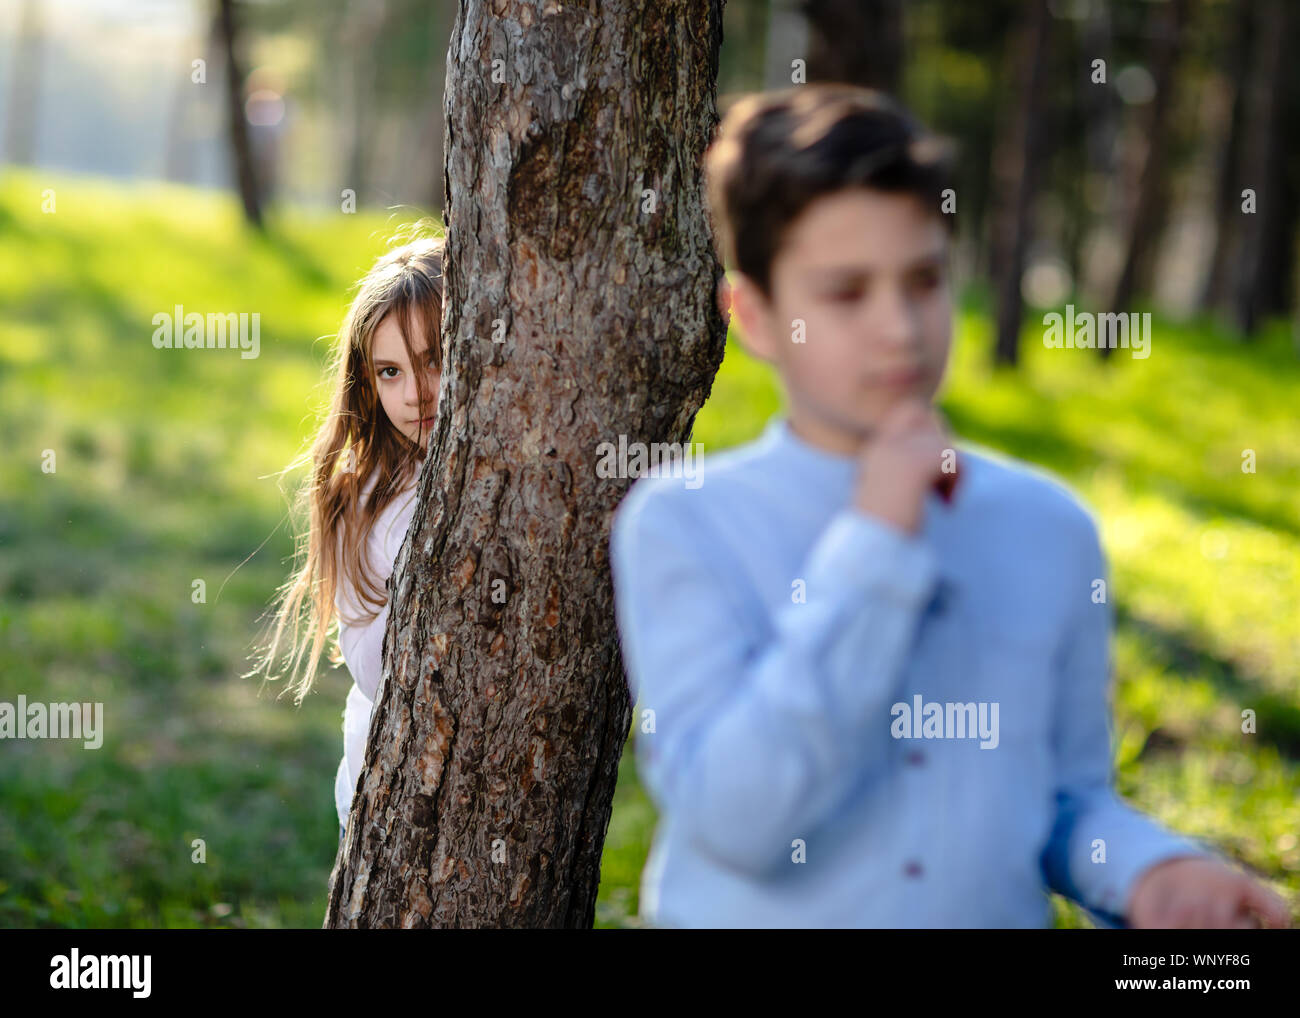 Un ragazzo e una ragazza di giocare a nascondino nel parco. Ragazza guarda il fidanzato. Bambina che si nasconde dietro la struttura ad albero e in agguato sul ragazzo. Foto Stock